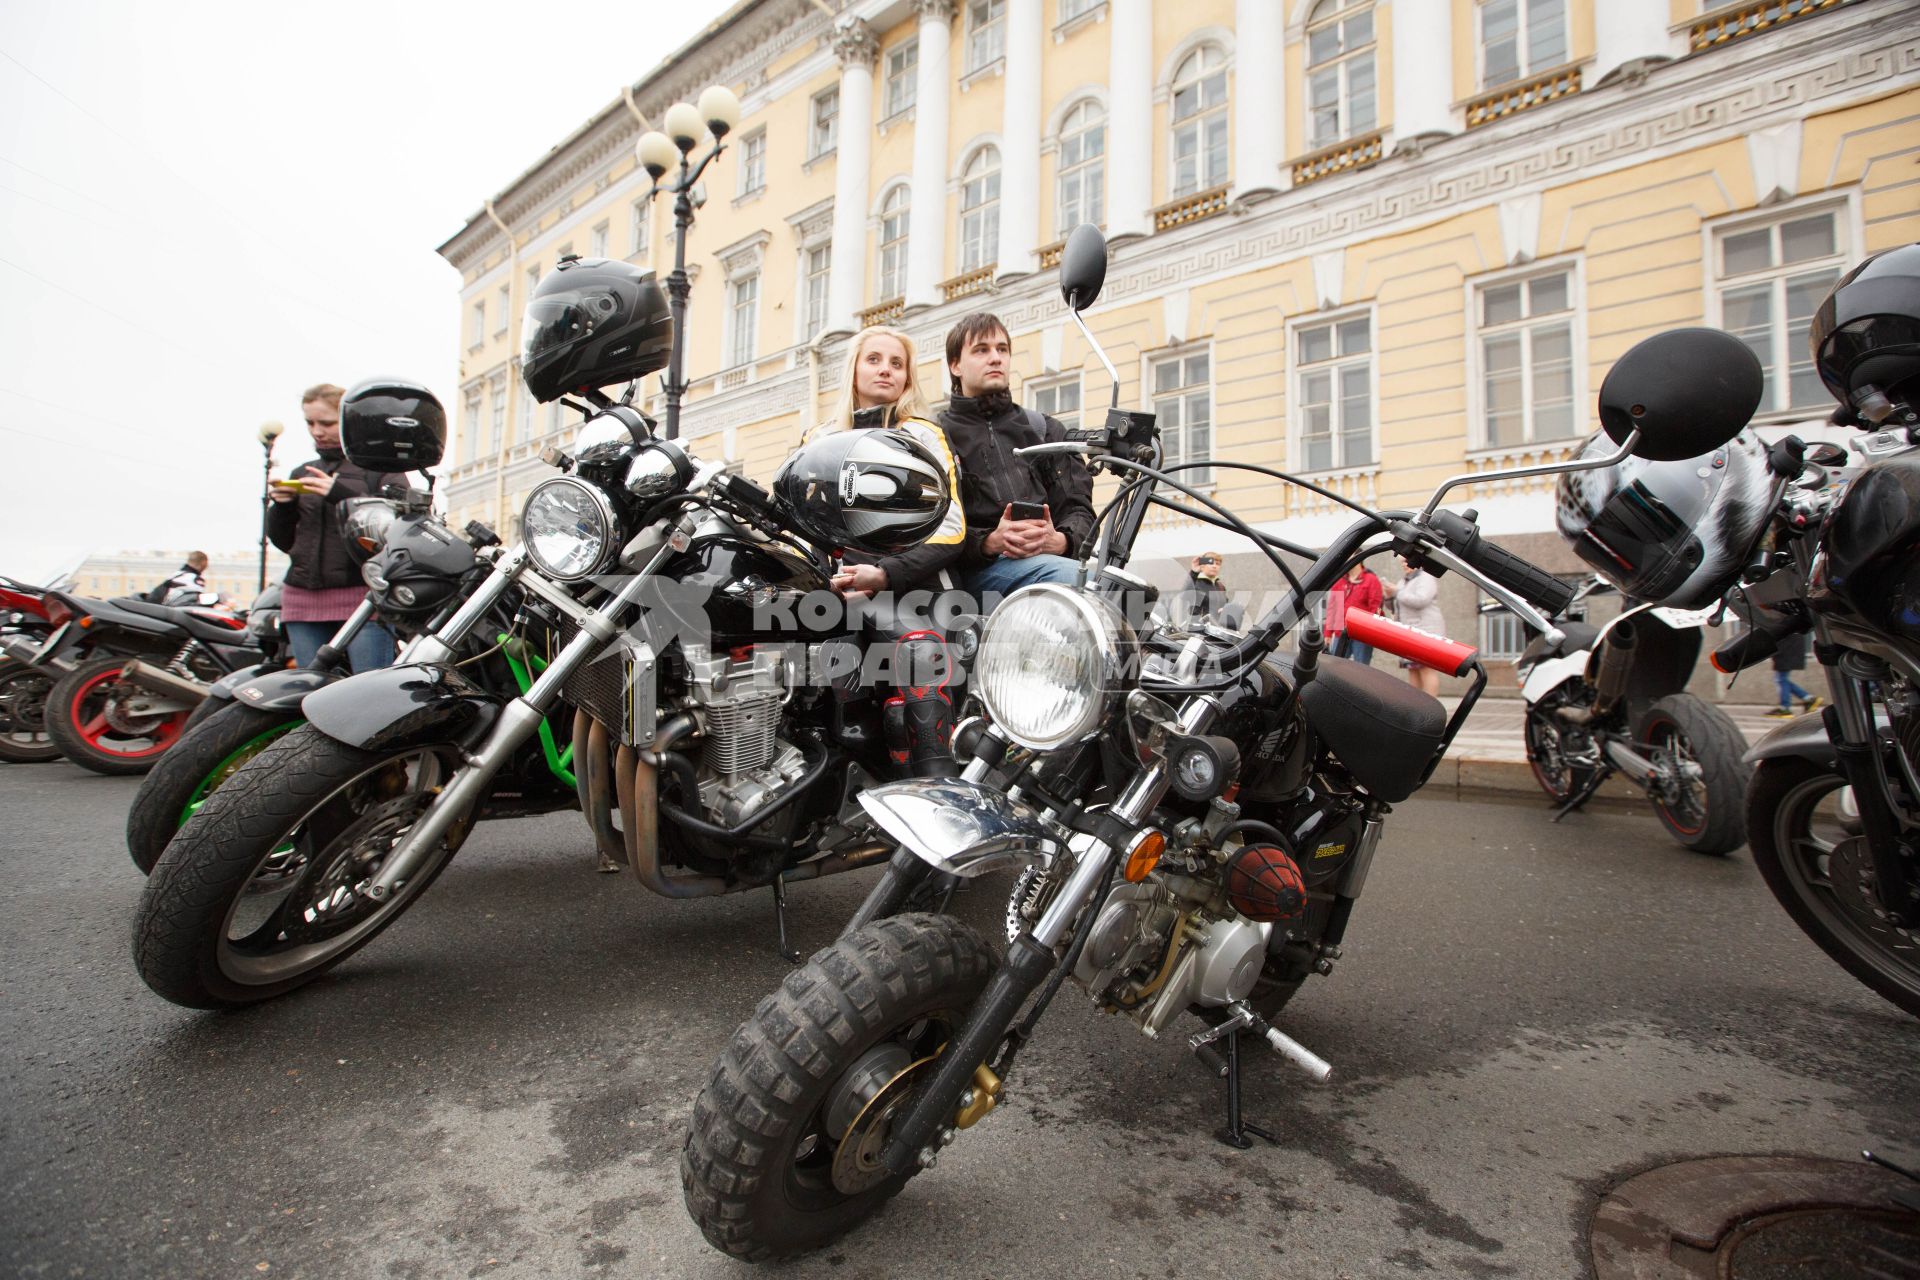 Санкт-Петербург. Сбор байкеров на Дворцовой площади во время открытия мотосезона.